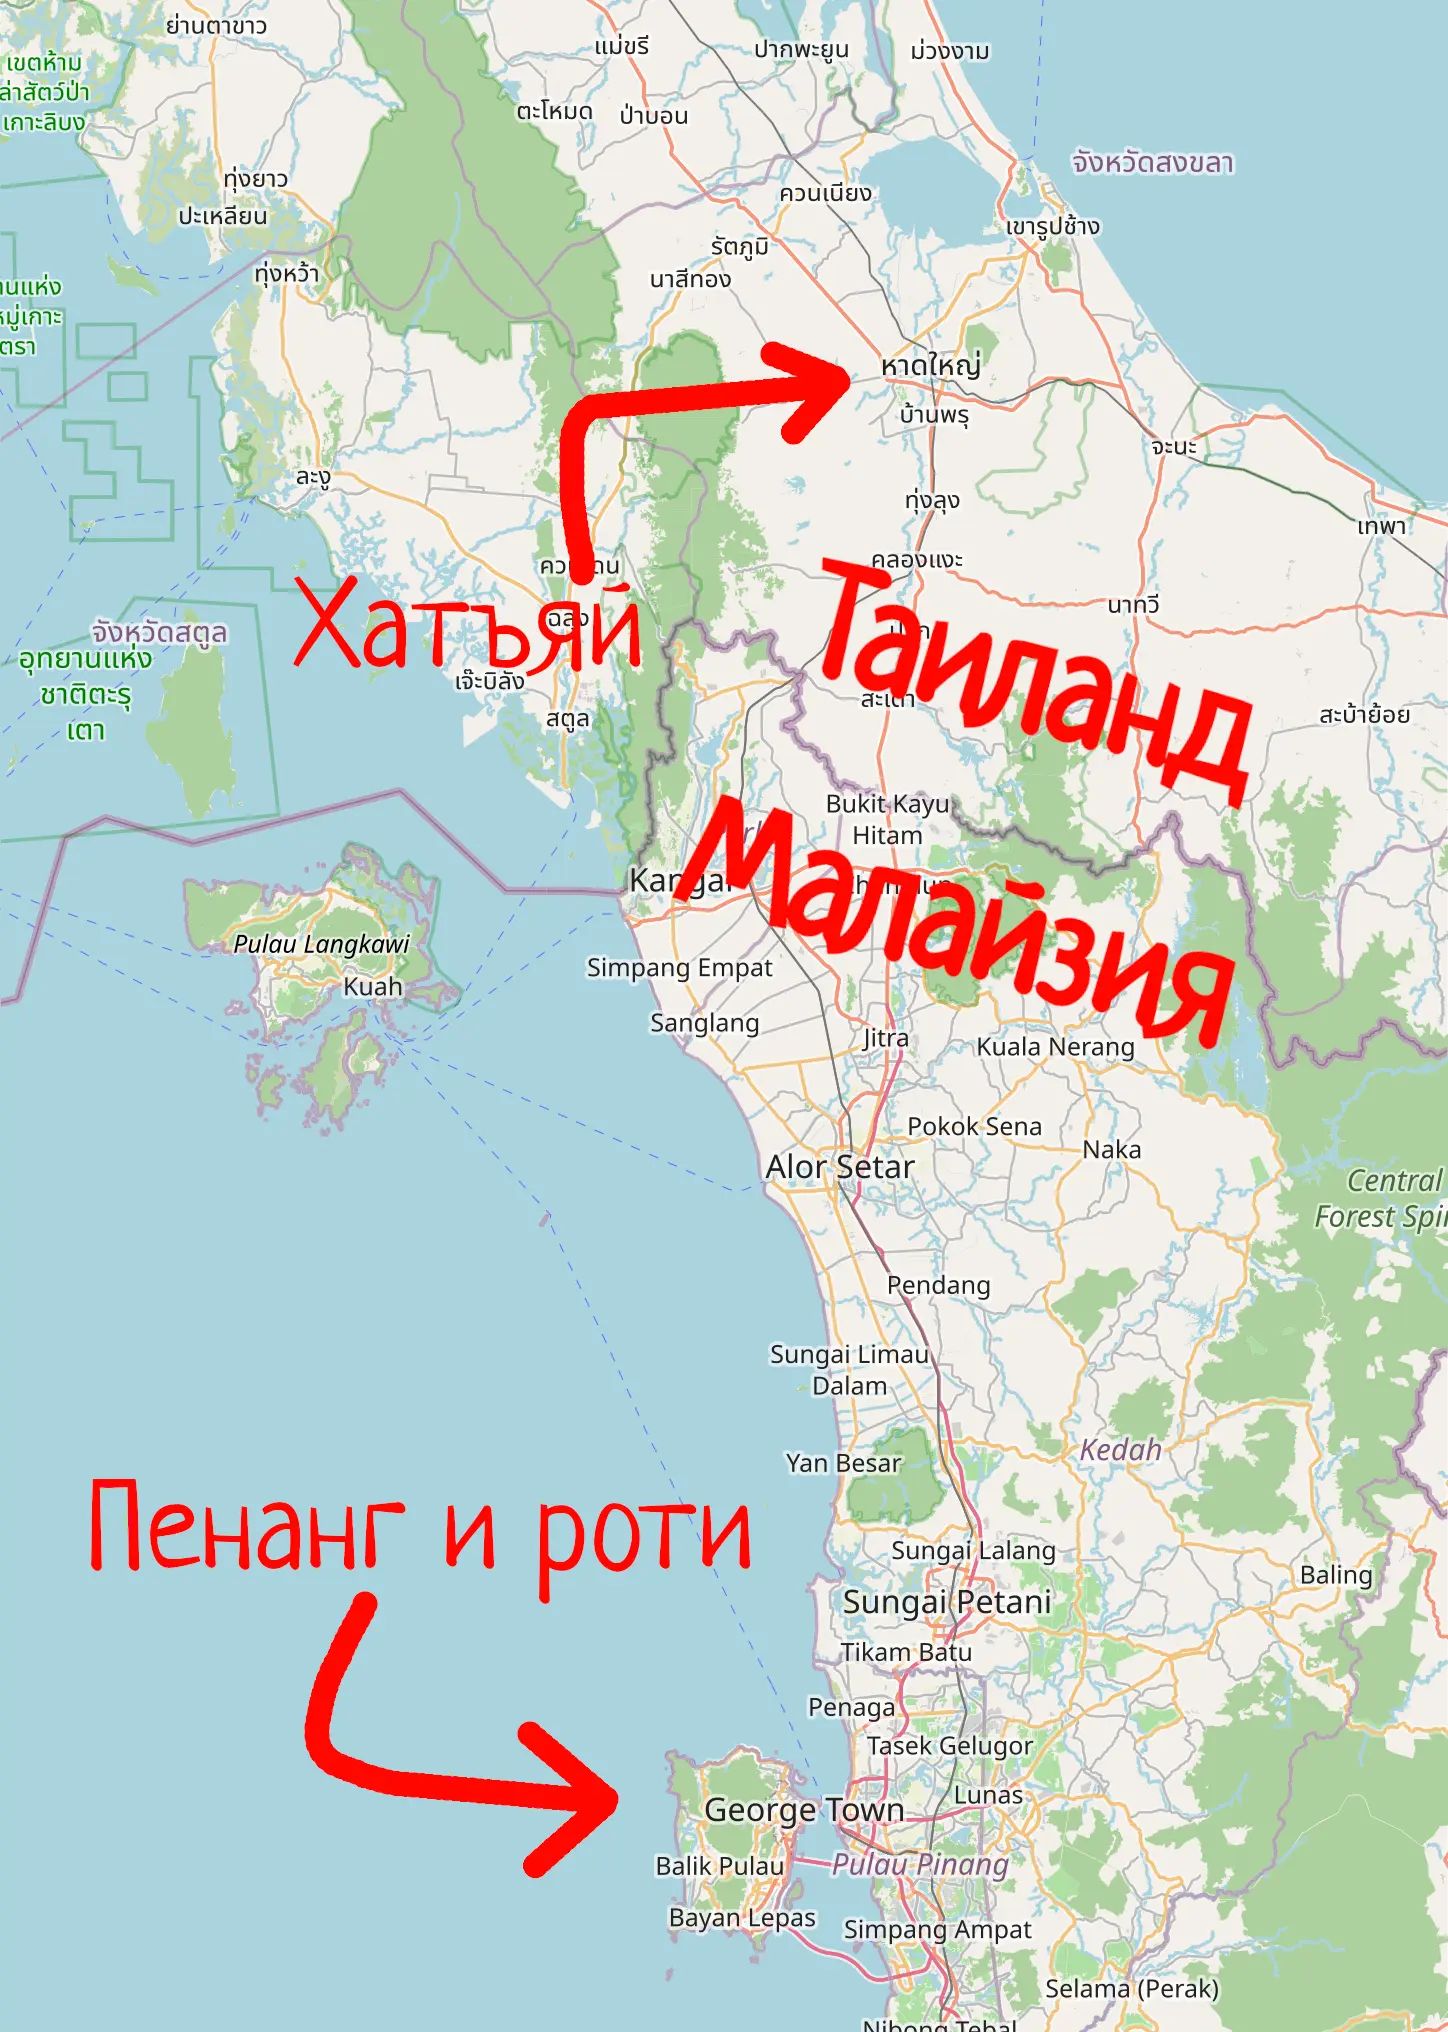 Карта с указанием Пенанга в Малайзии и Хатъяй в Таиланде. Пенанг подписан &ldquo;Пенанг и роти.&rdquo;